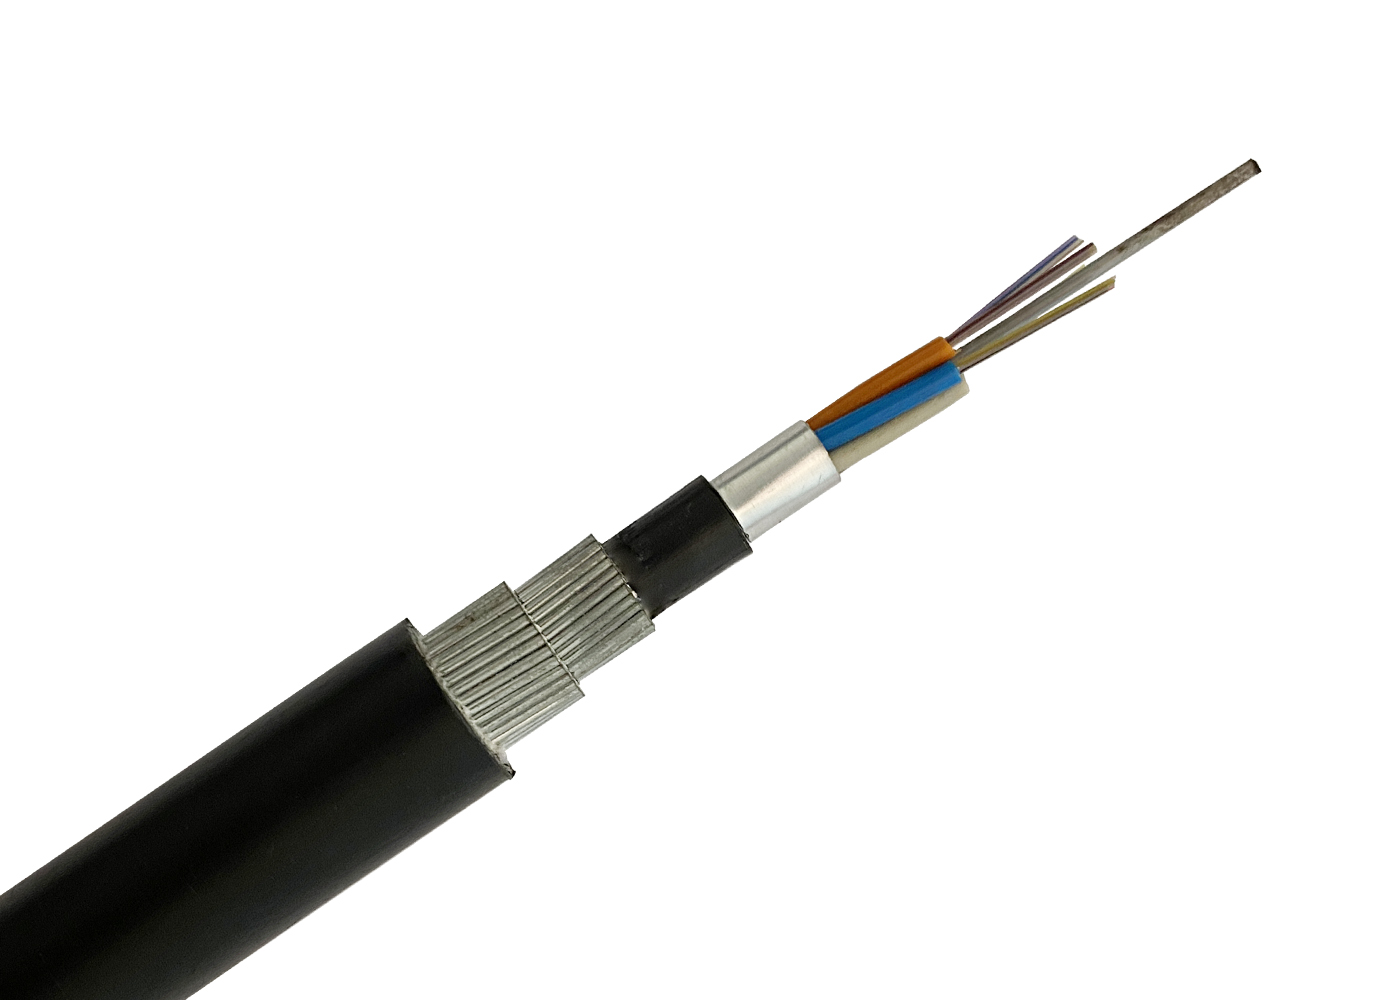 GYTA333 cable